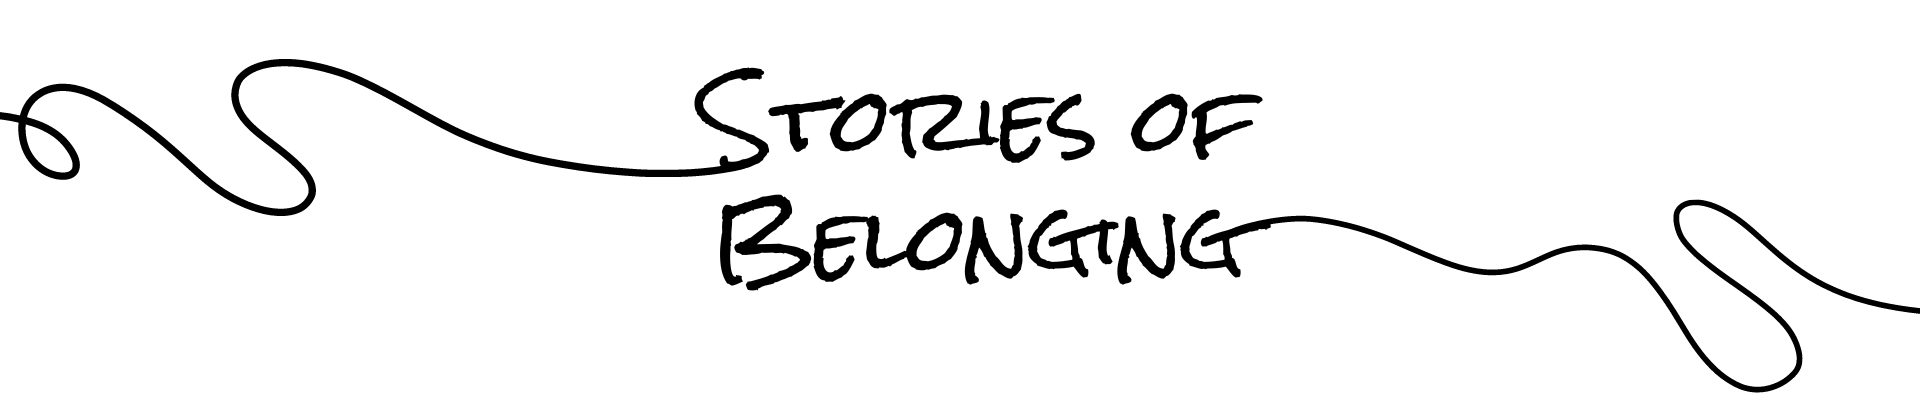 Stories of Belonging